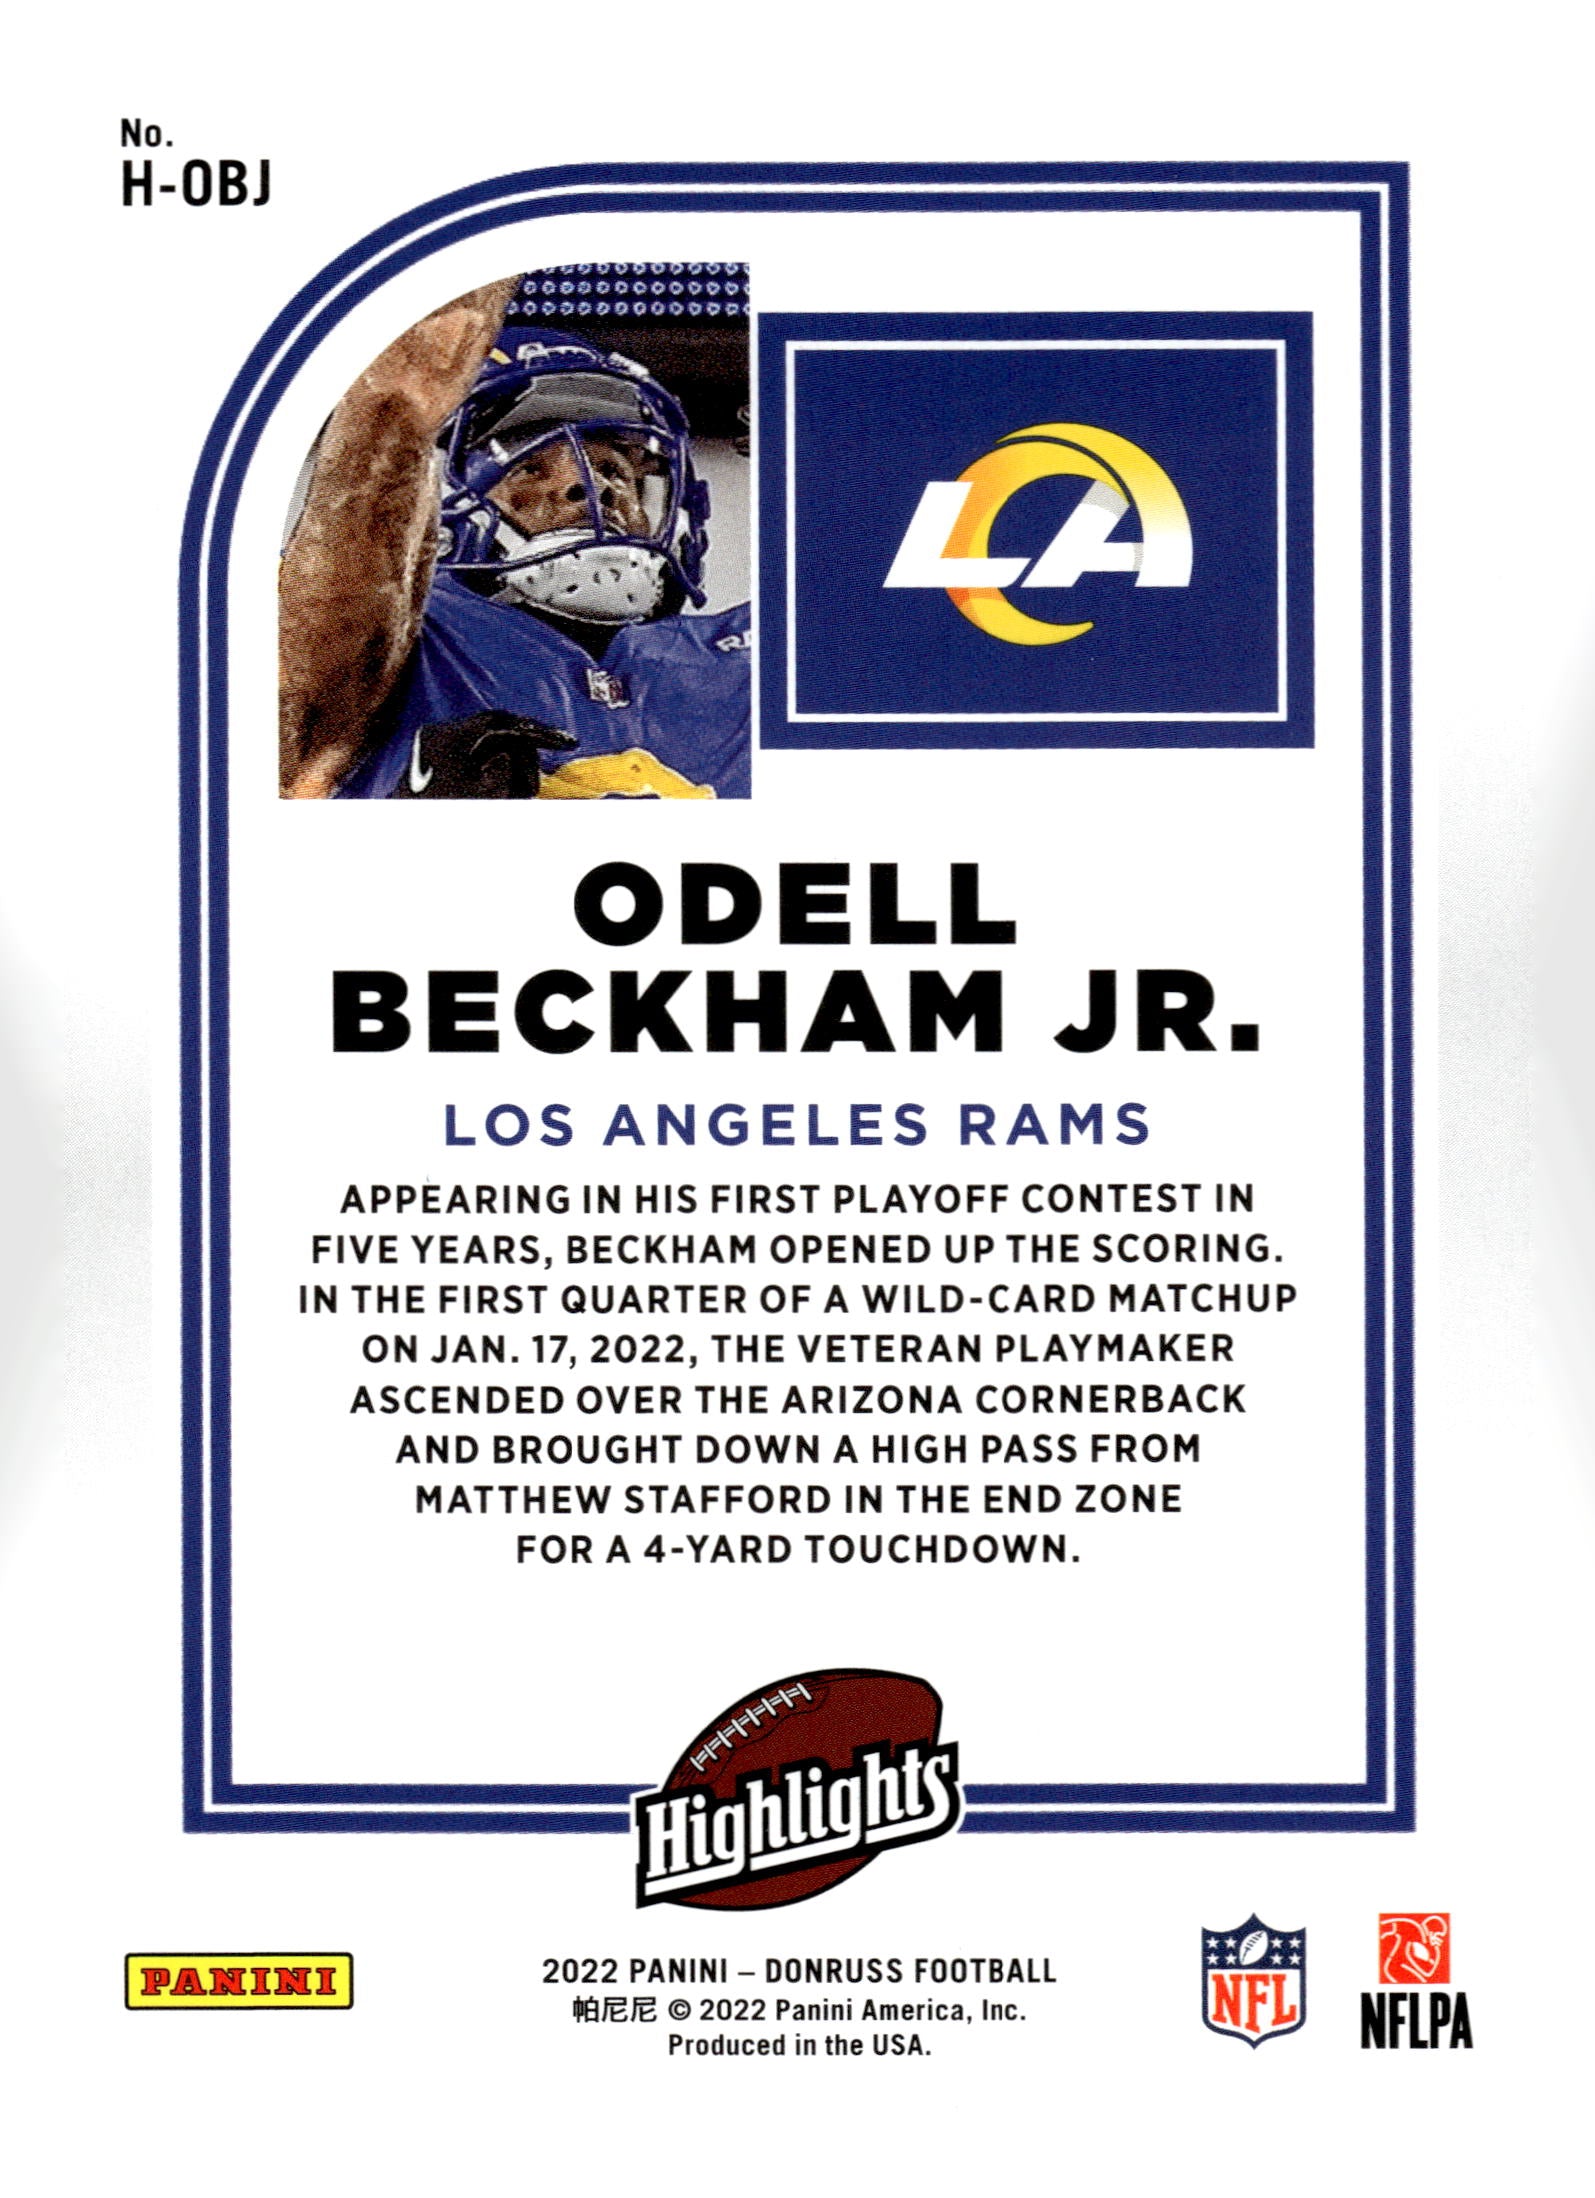 2022 Donruss #H-OBJ Odell Beckham Jr. Highlights